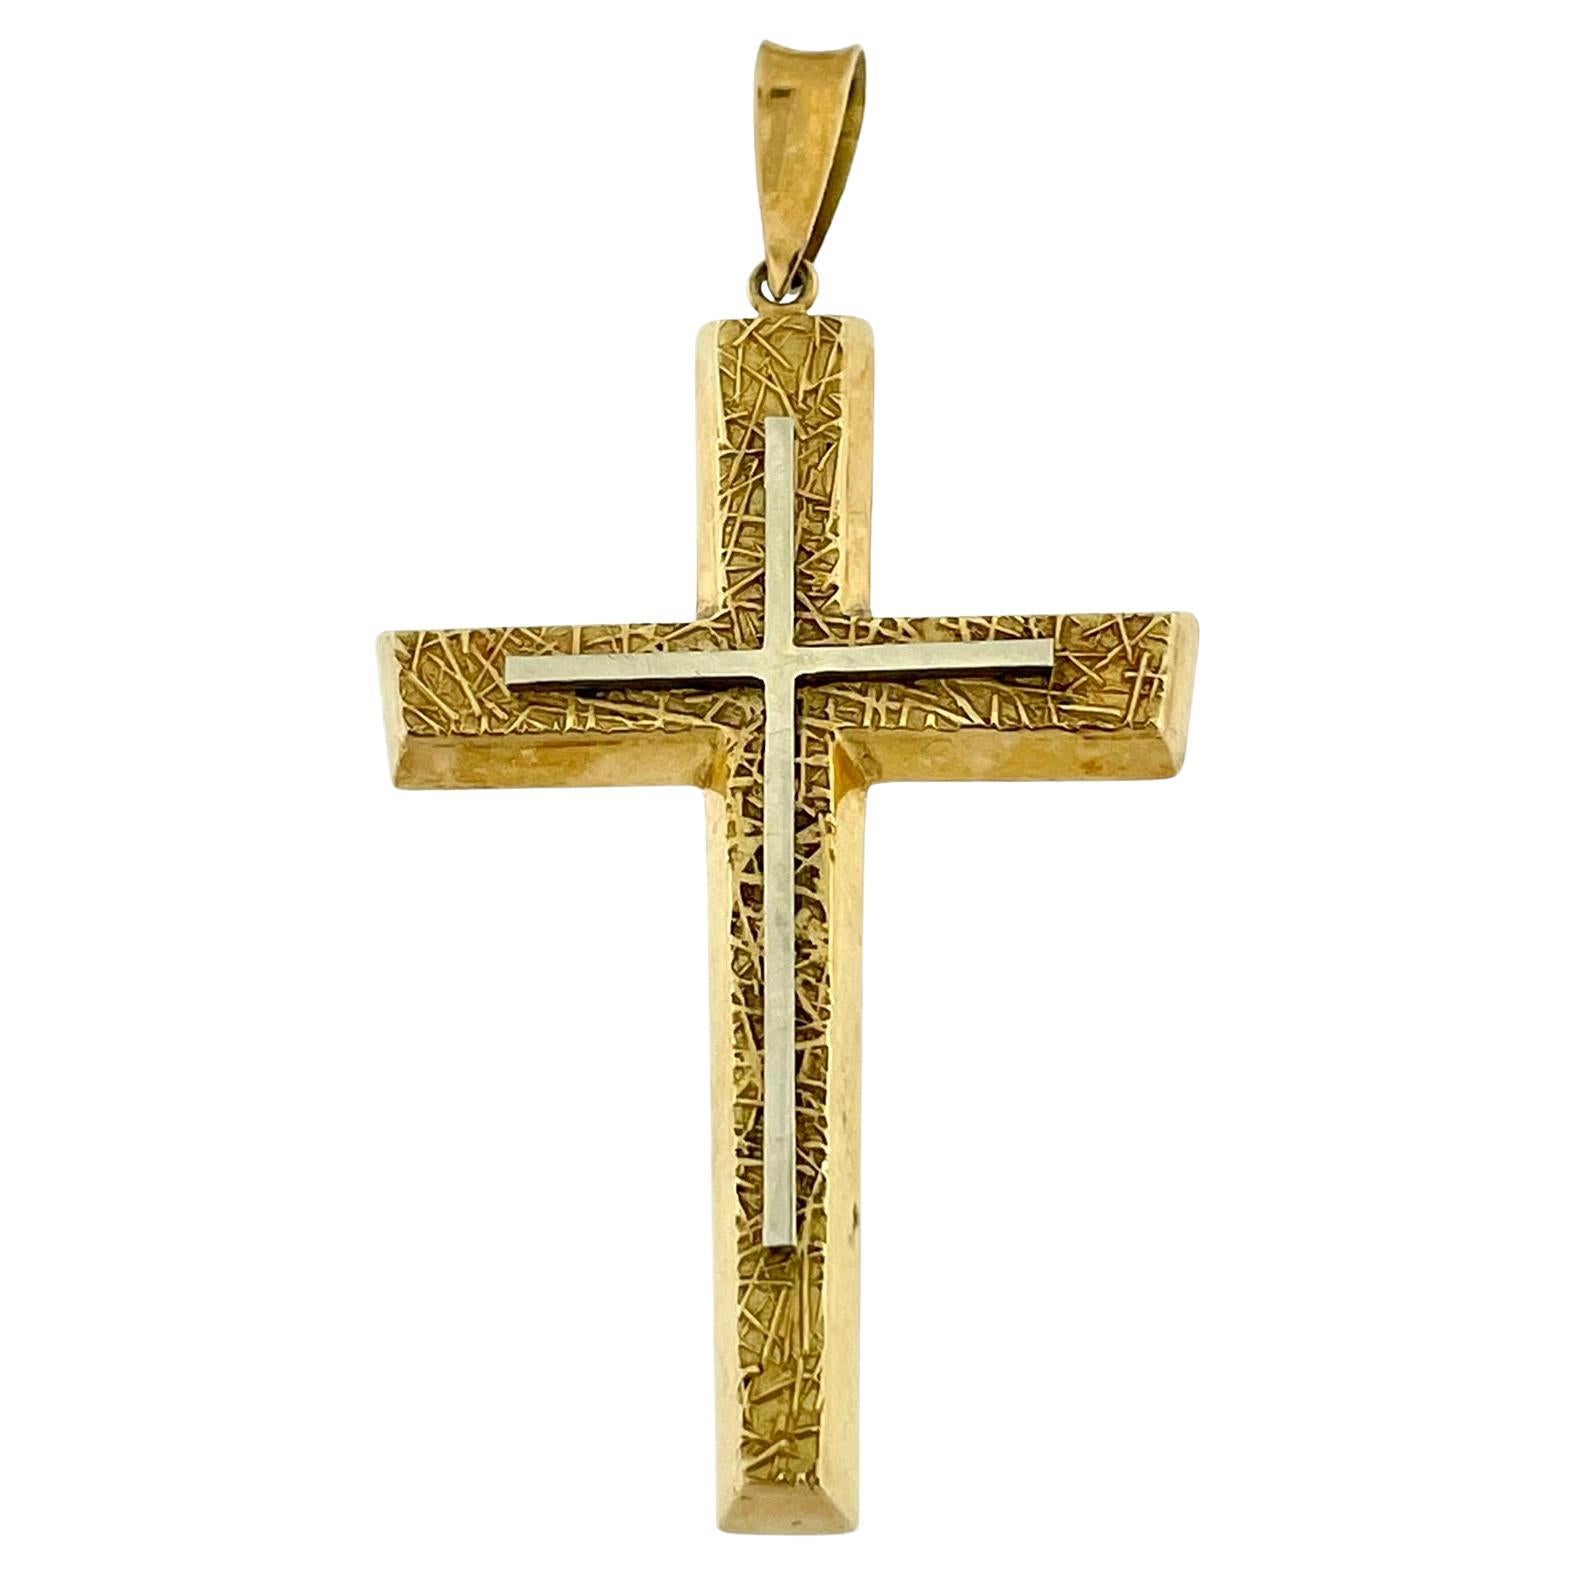 Austrian Antique 18kt Gold Cross